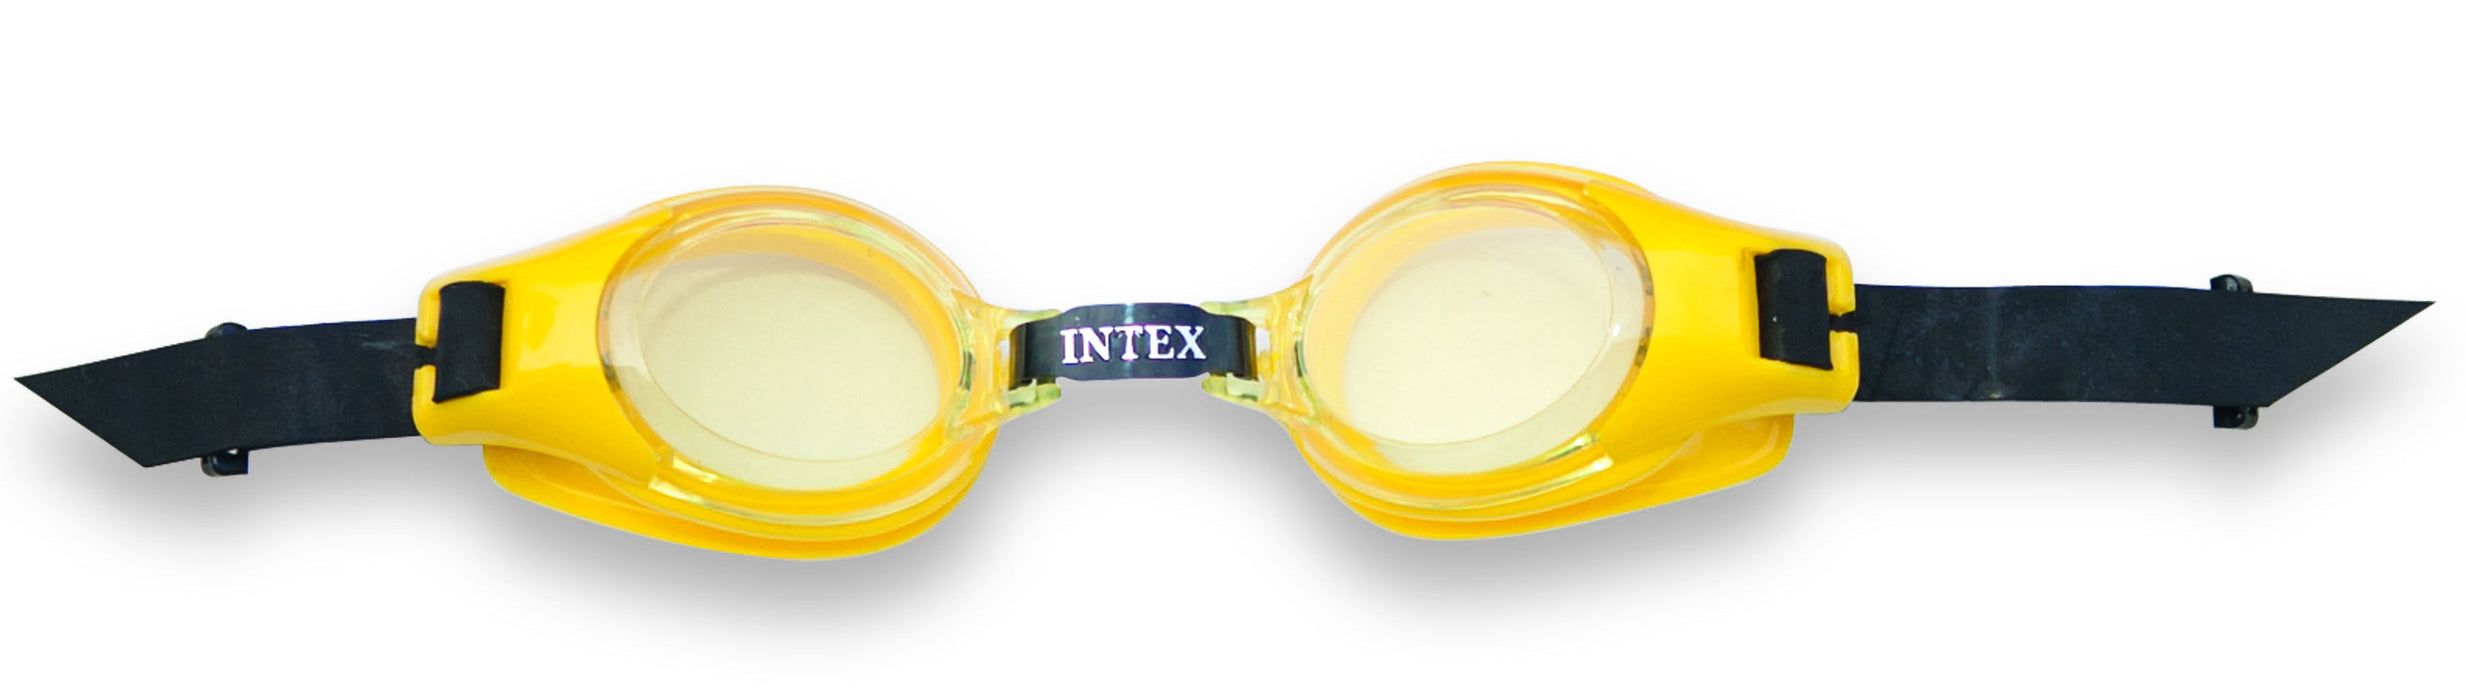 INTEX Play Goggles